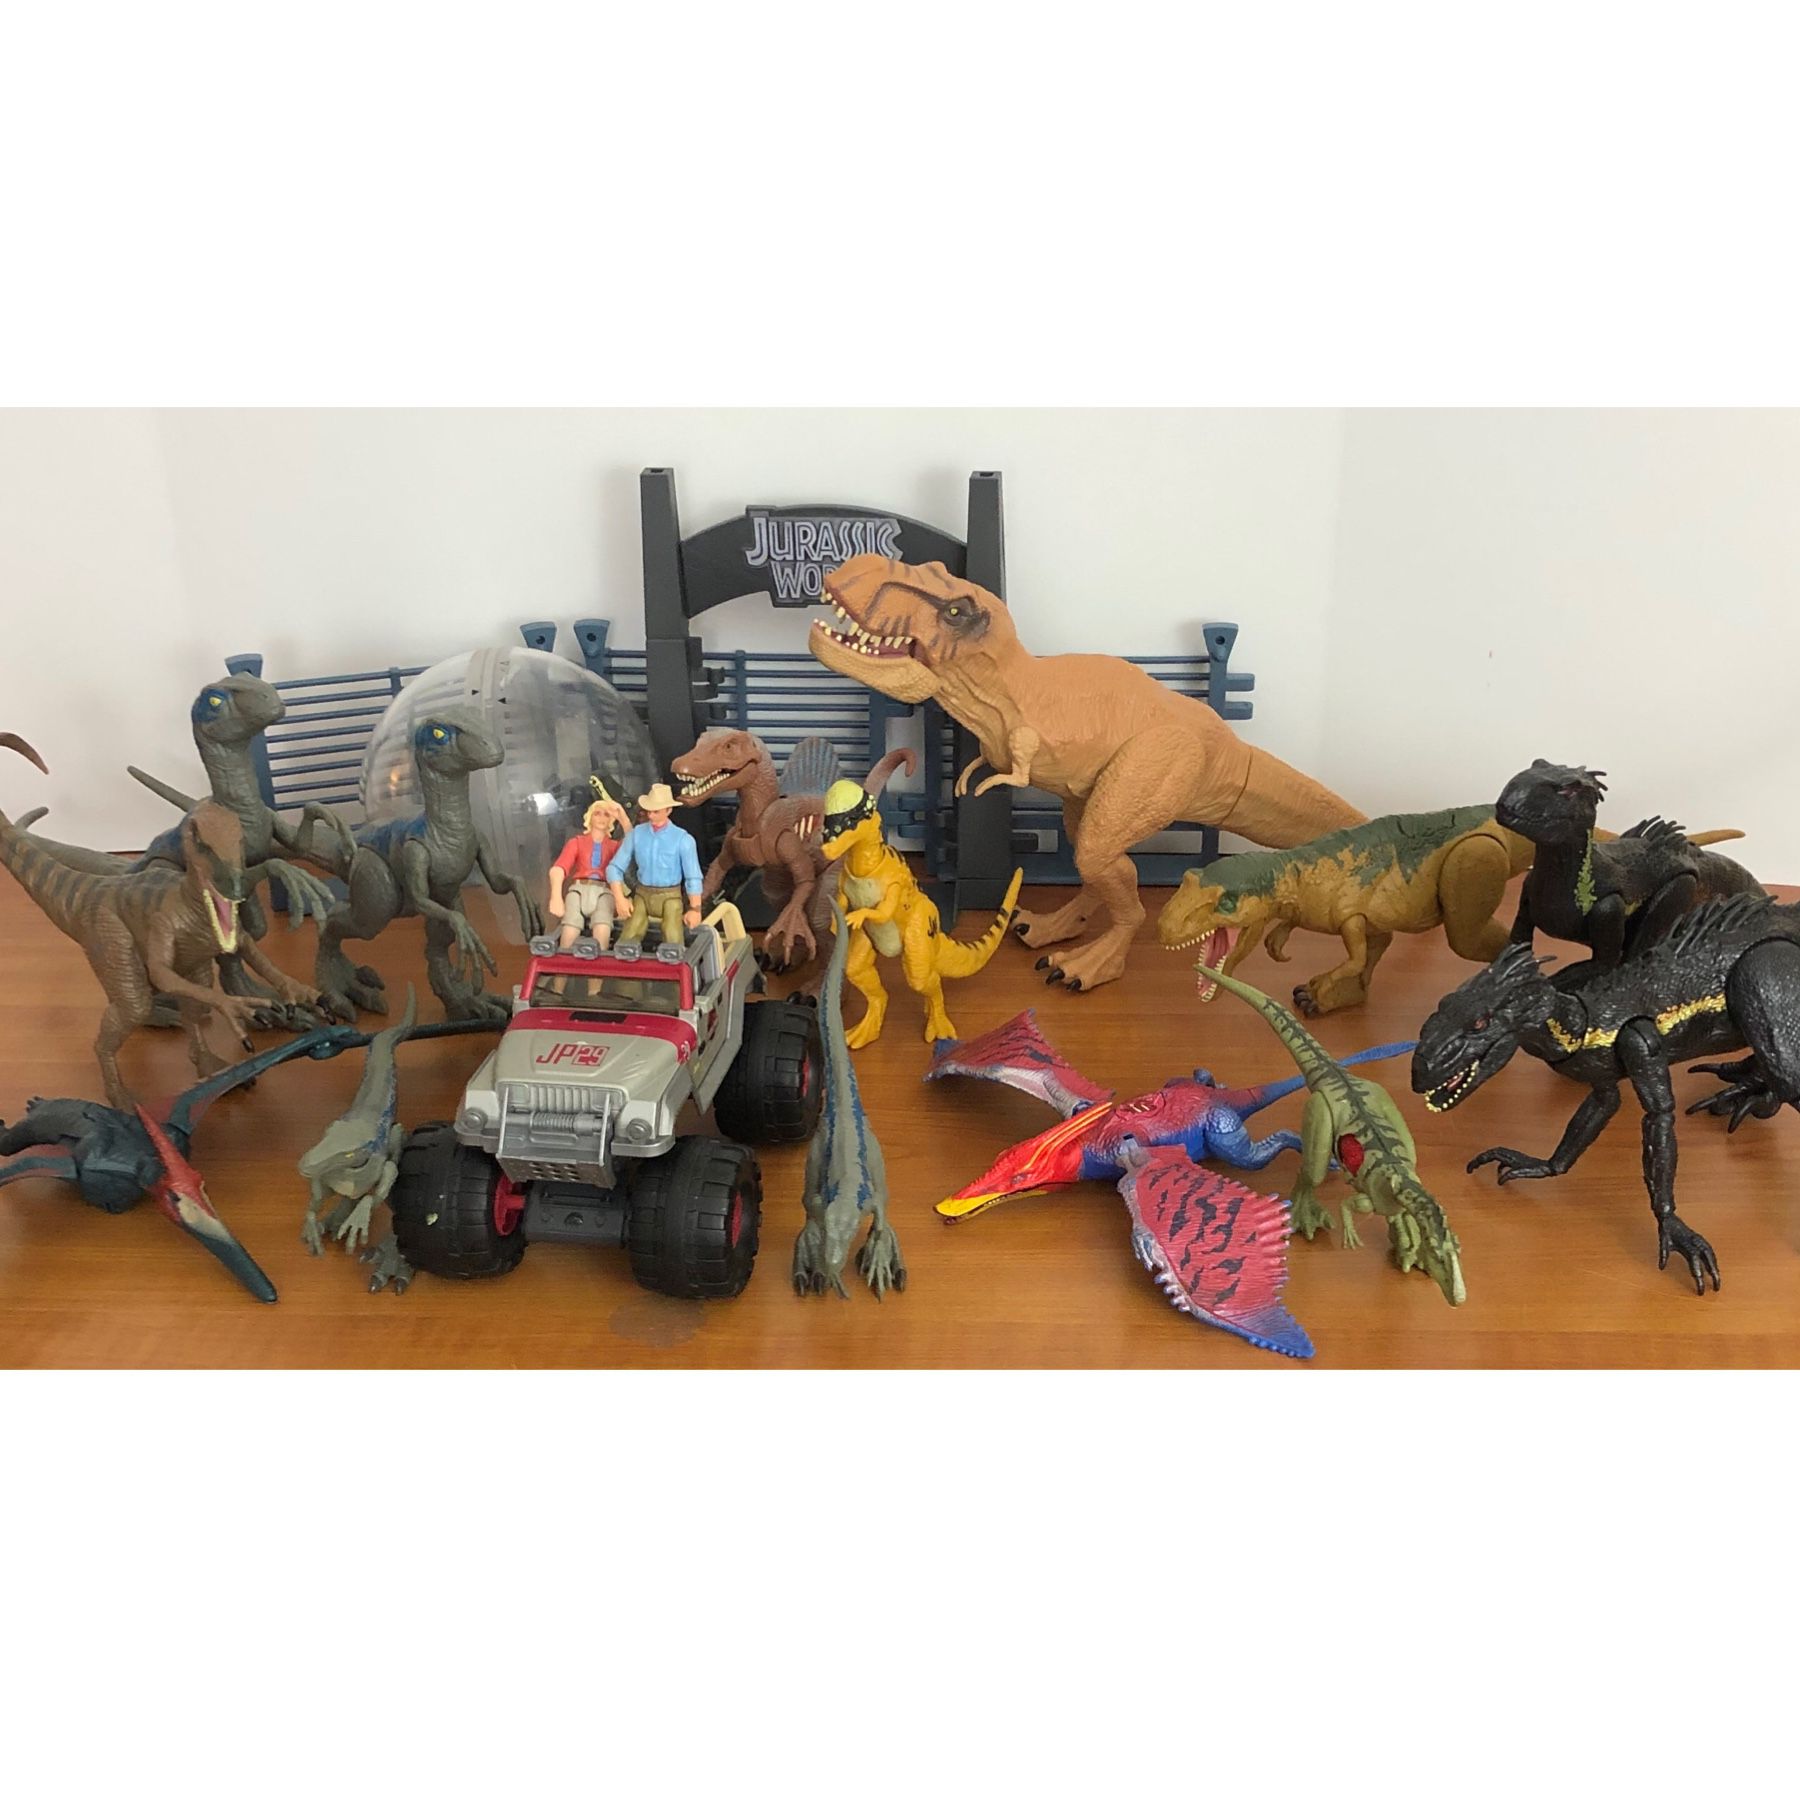 Jurassic World Dinosaur Lot